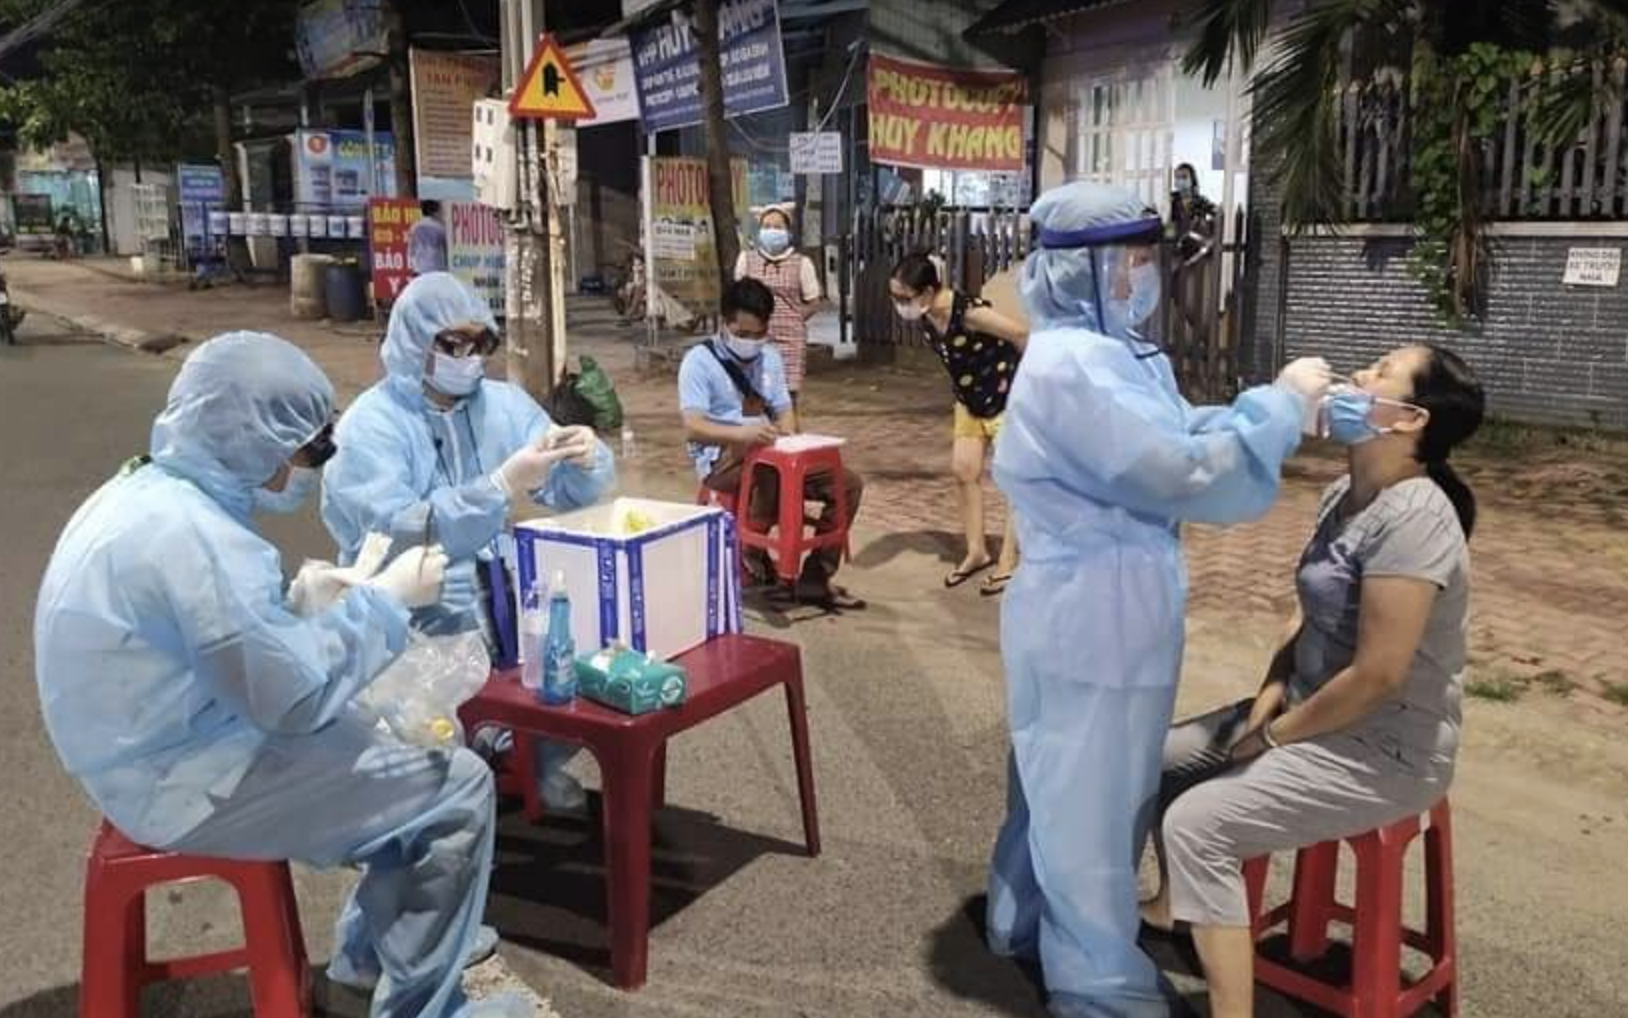 Đêm 12/6, Bình Dương thông báo thêm 1 trường hợp tại công ty PUKU Việt Nam dương tính với SARS-CoV-2, khẩn tìm người đến 4 địa điểm